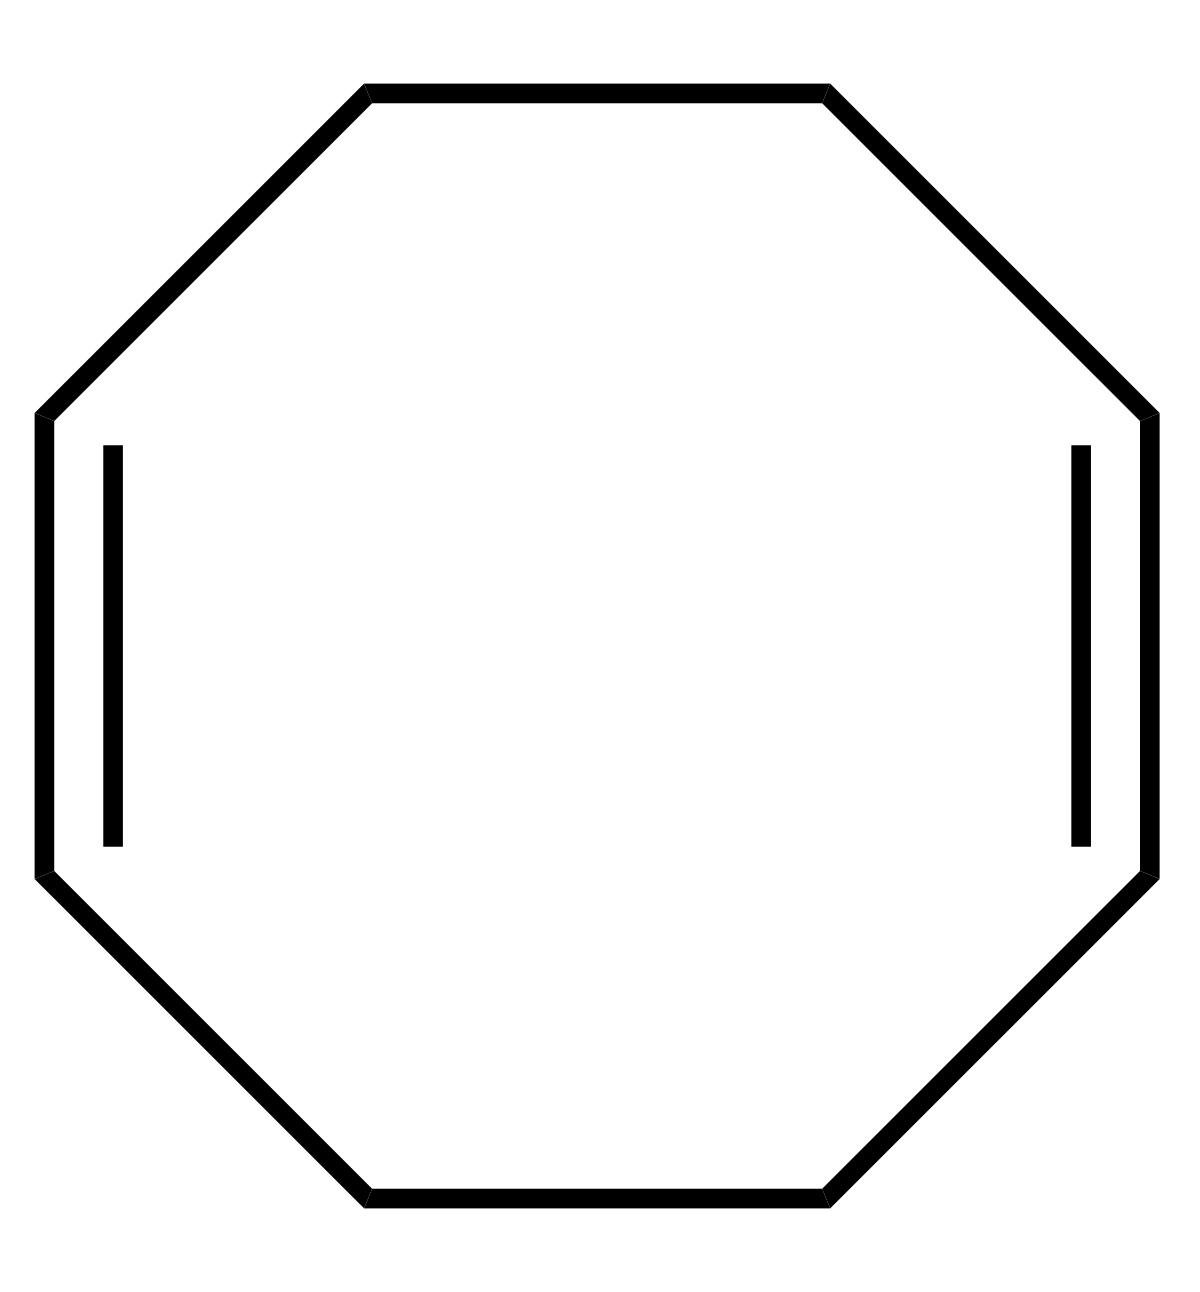 Cycloocta-1,5-diène